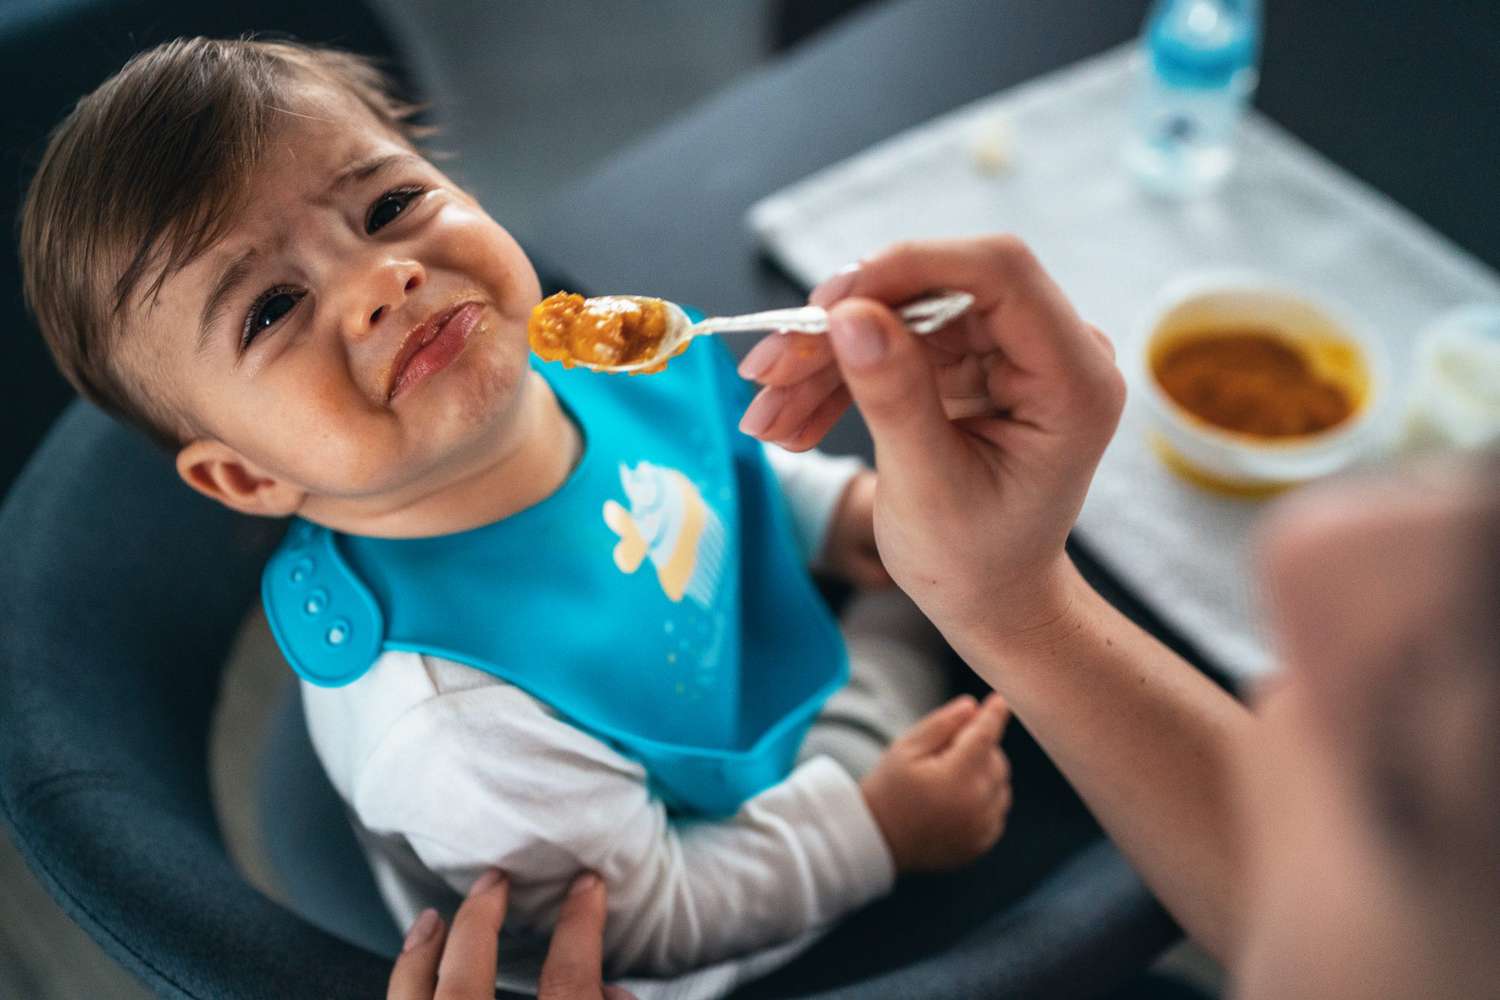 toddler refusing to eat food